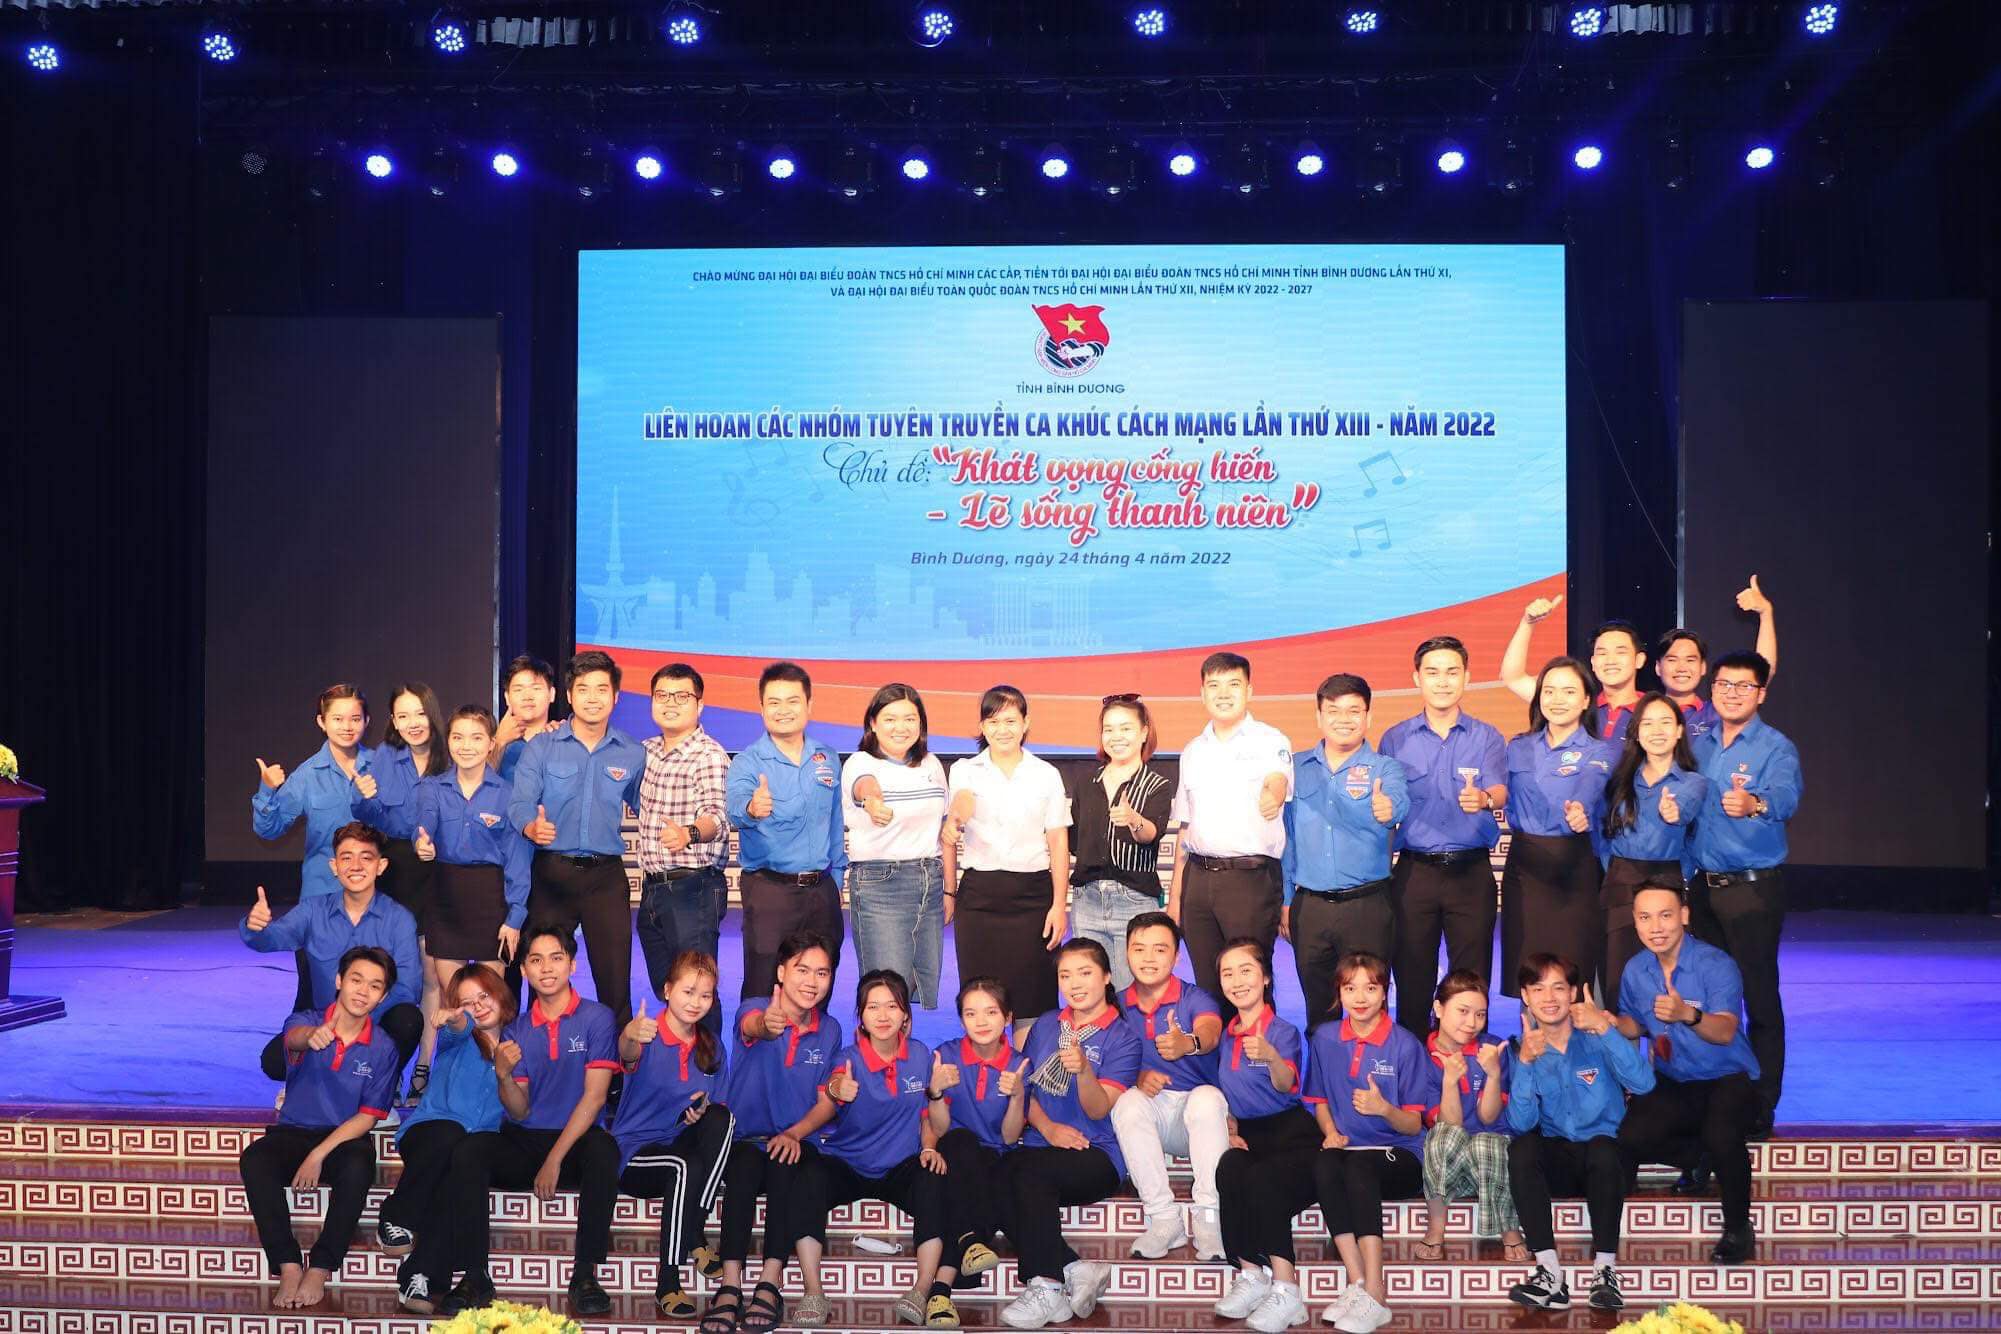 Đoàn TNCS Hồ Chí Minh Trường Đại học Thủ Dầu Một Đạt Giải Nhất Toàn Đoàn Liên Hoan Các Nhóm Tuyên Truyền Ca Khúc Cách Mạng Tỉnh Bình Dương - Năm 2022